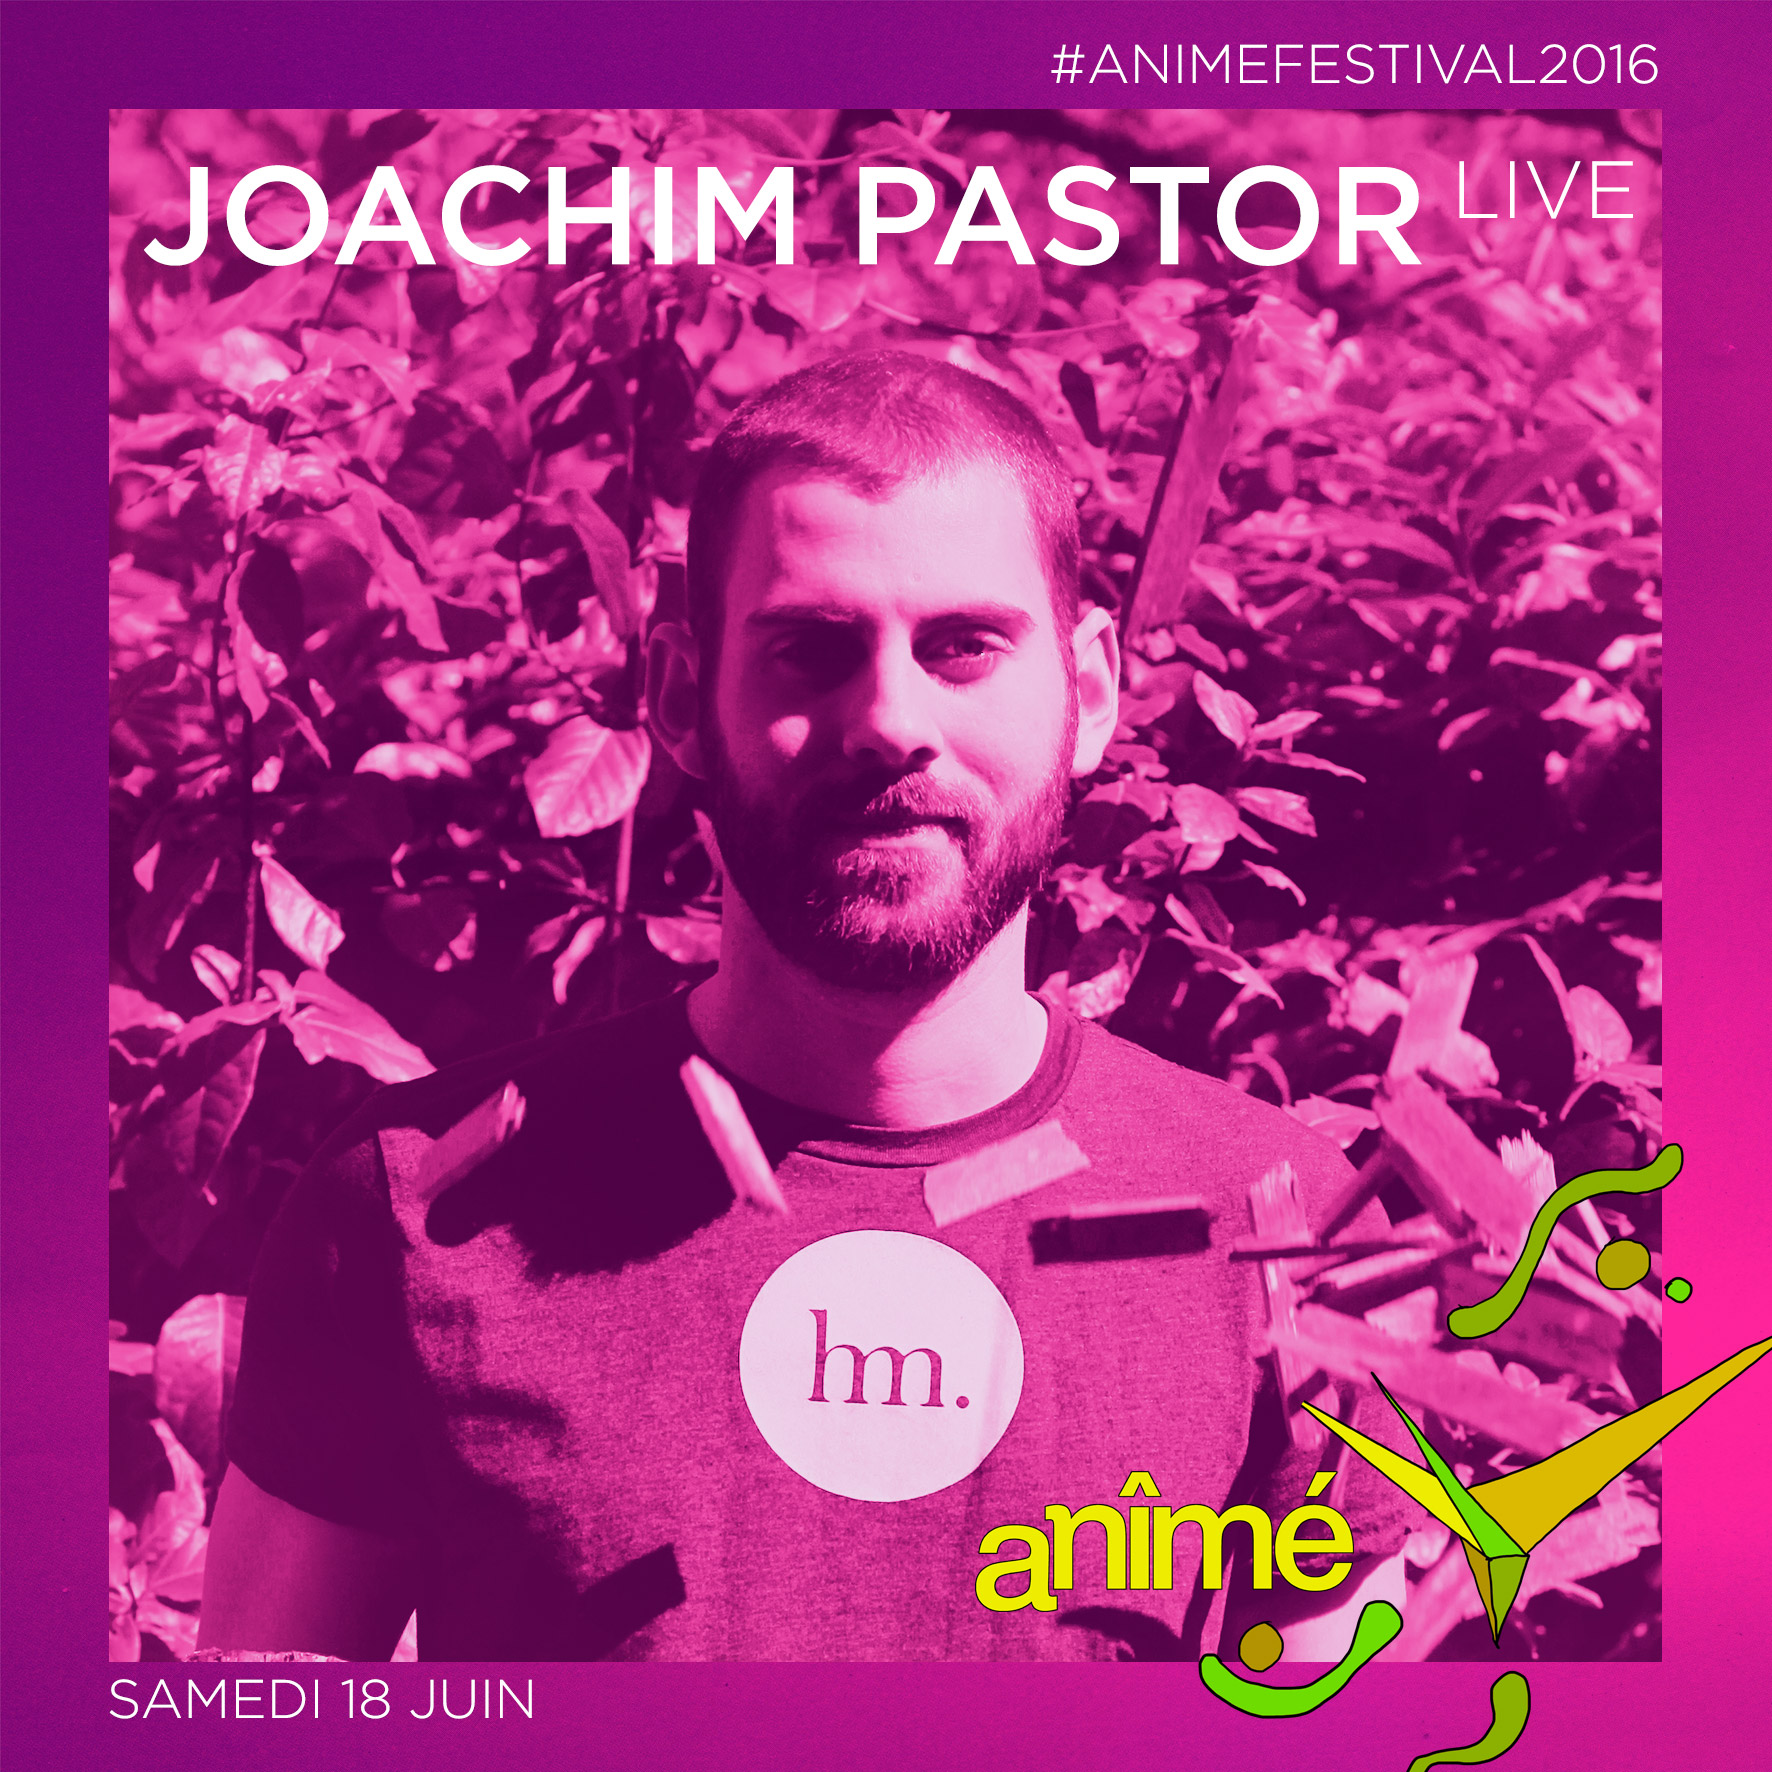 Joachim Pastor